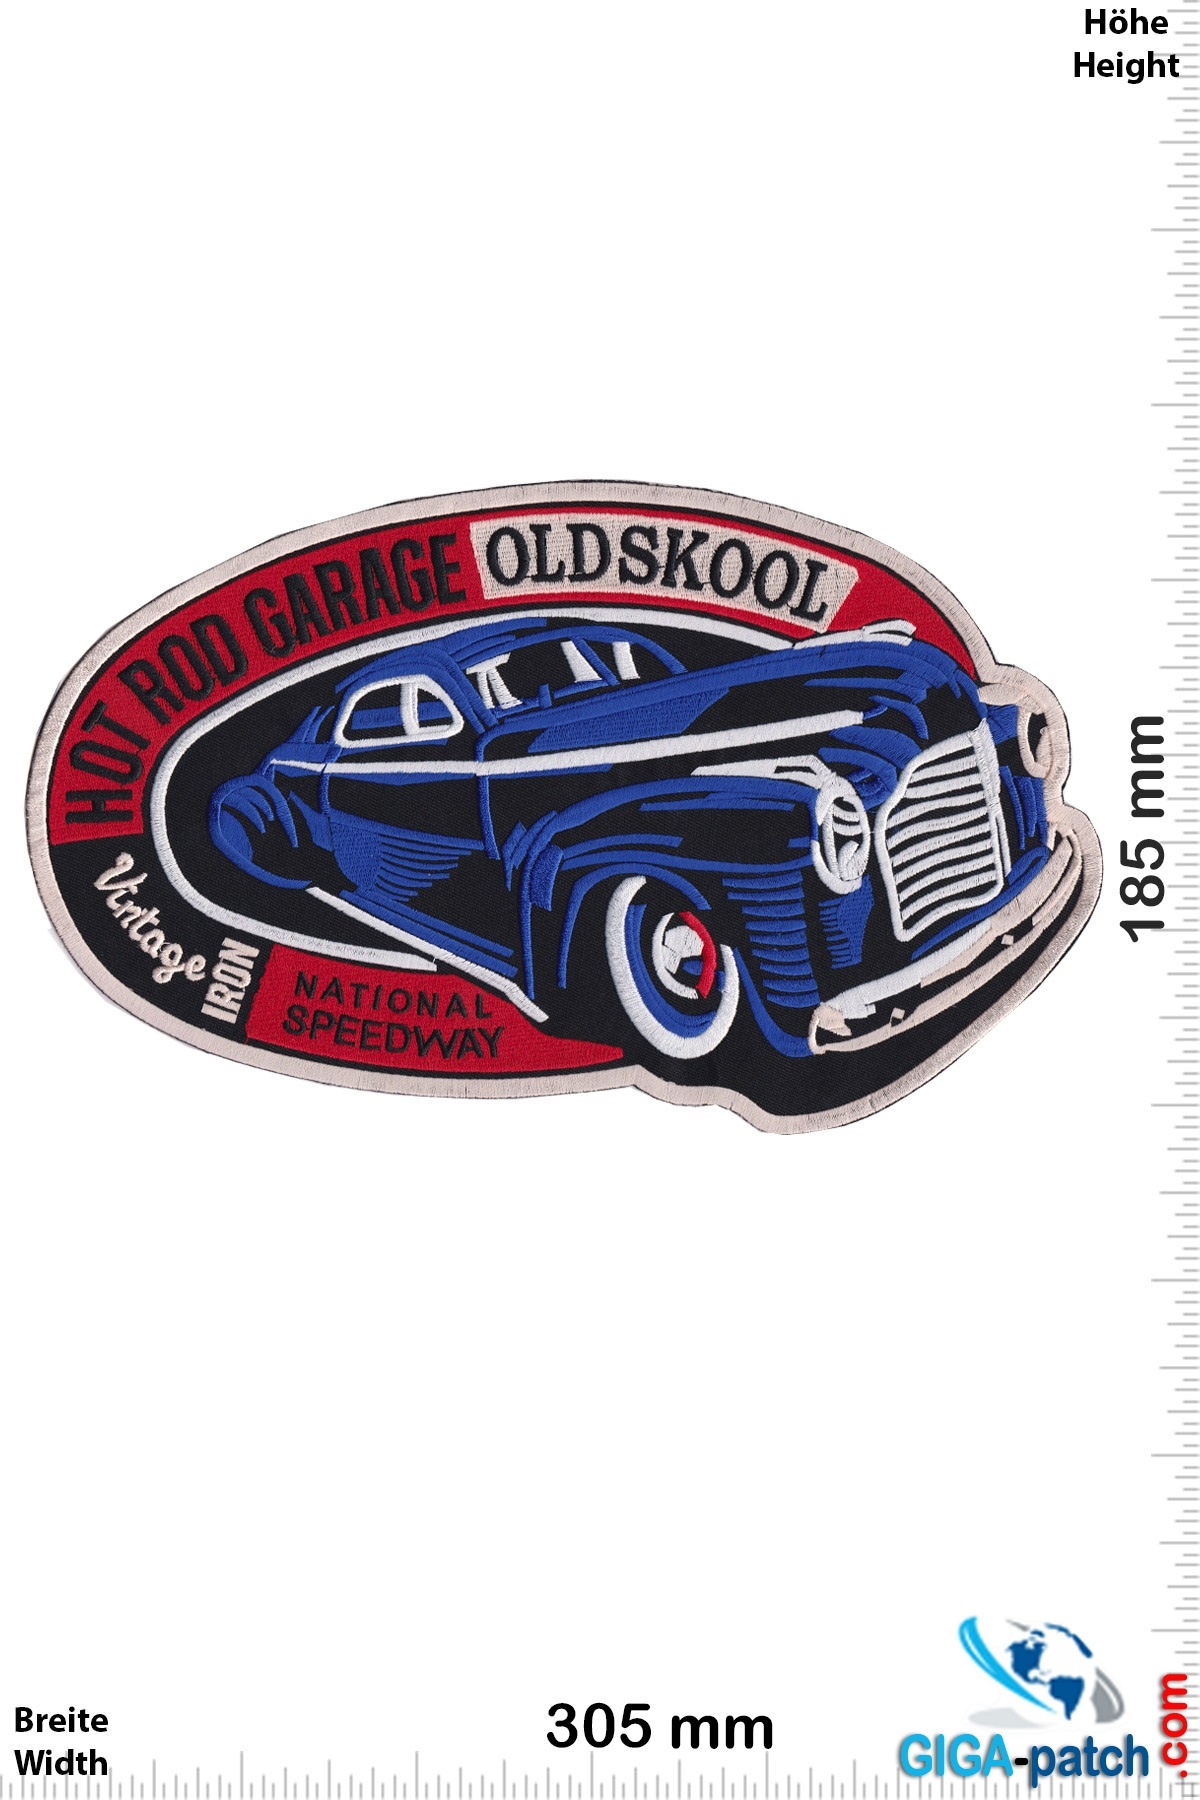 Hot Rod Hot Rod Garage - Old Skool - National Speedway  -  30 cm